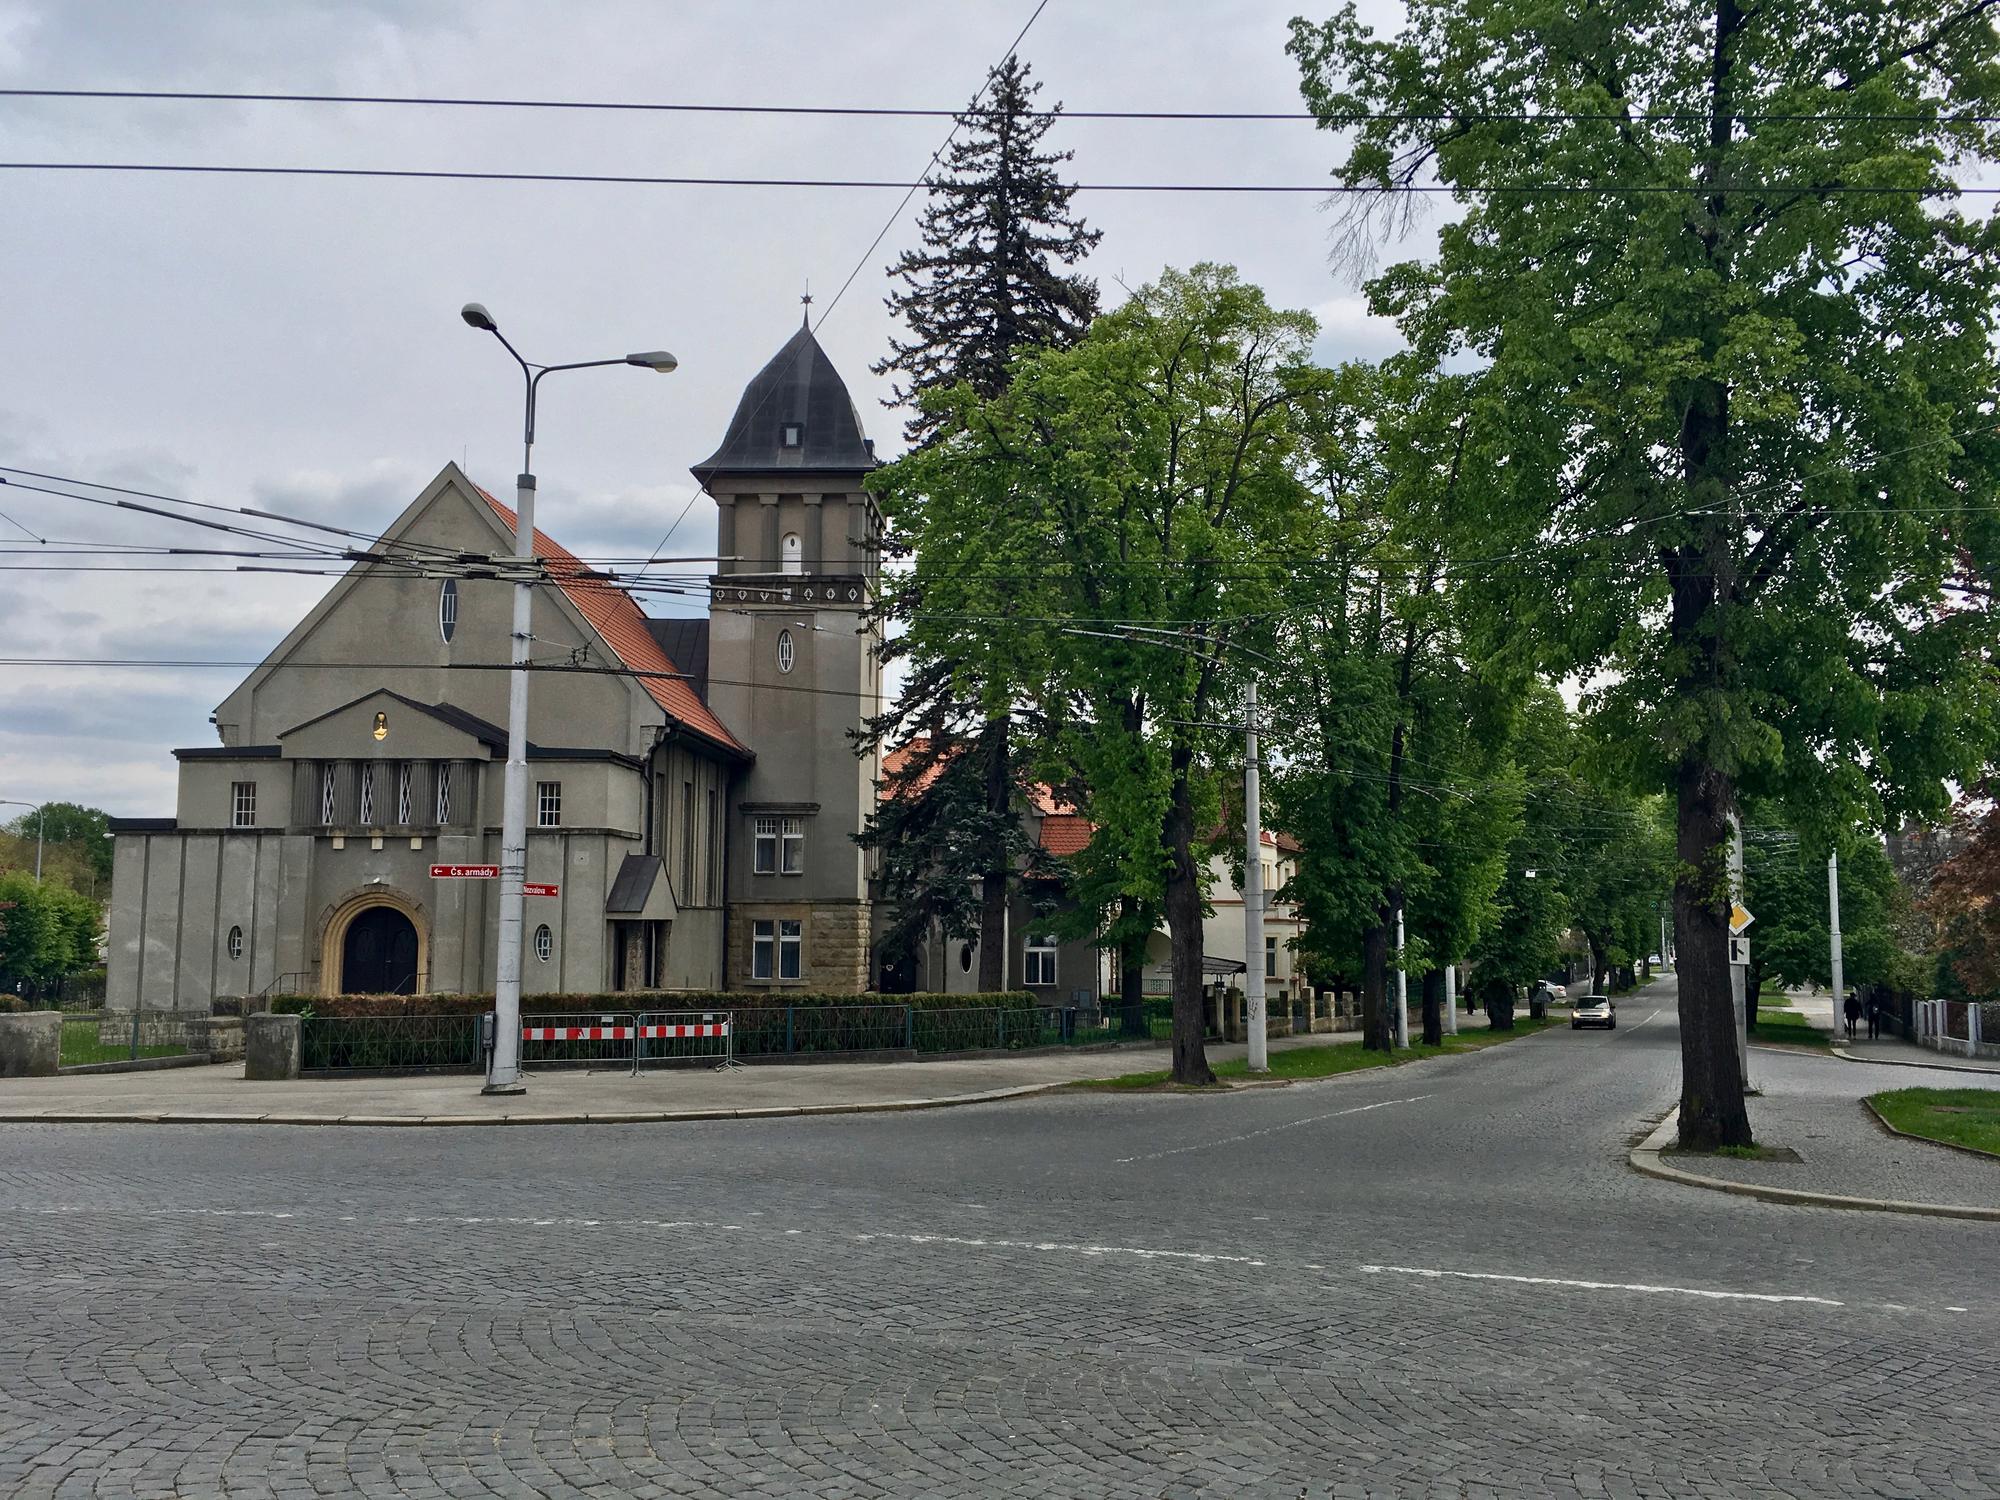 🇨🇿 Градец-Кралове, Чехия, май 2017.